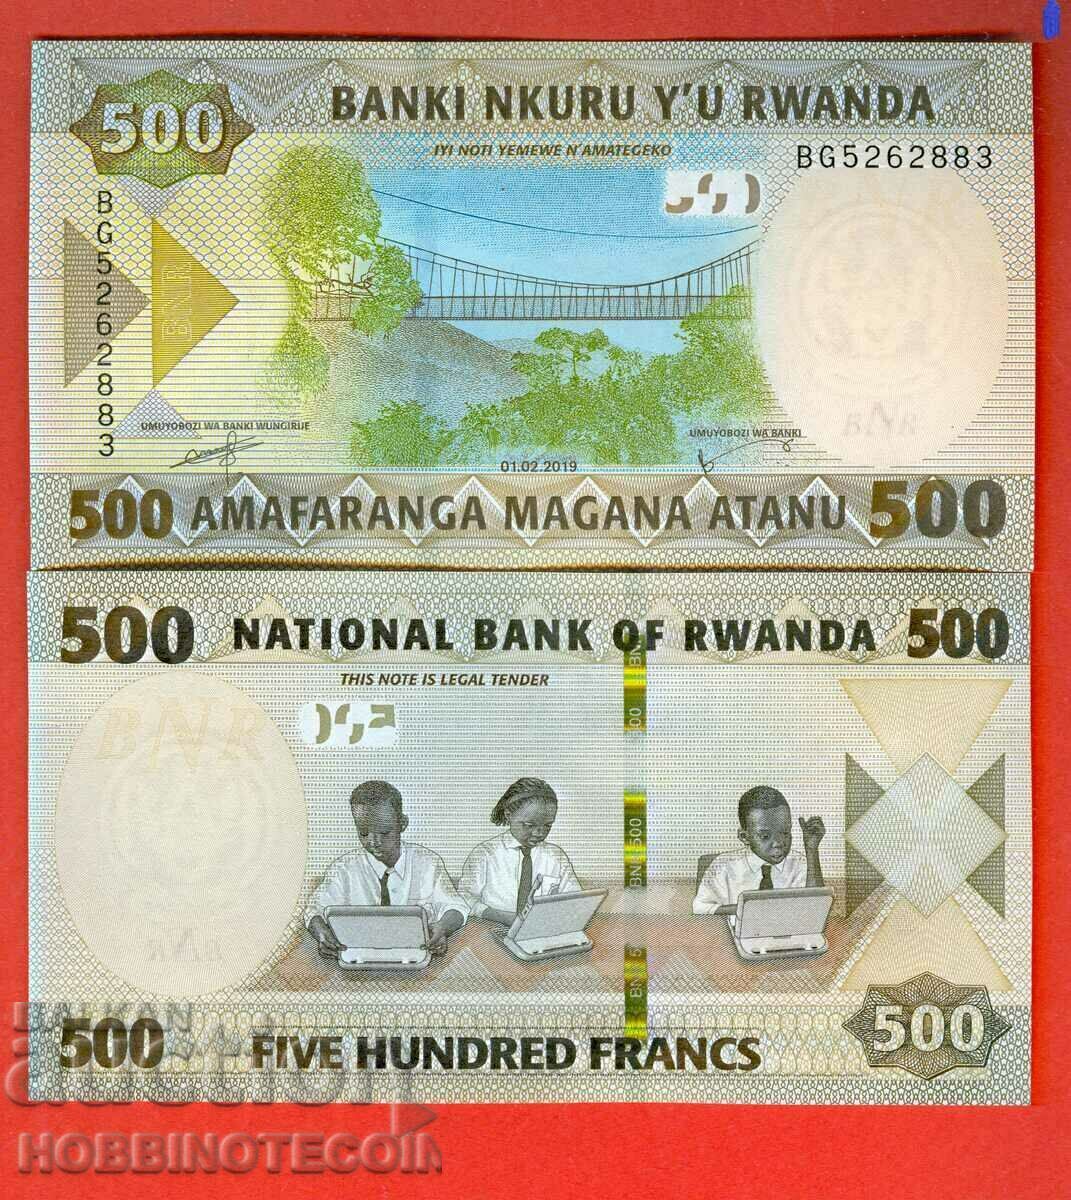 RWANDA RWANDA 500 Franc emisiune - emisiune 2019 NOU UNC